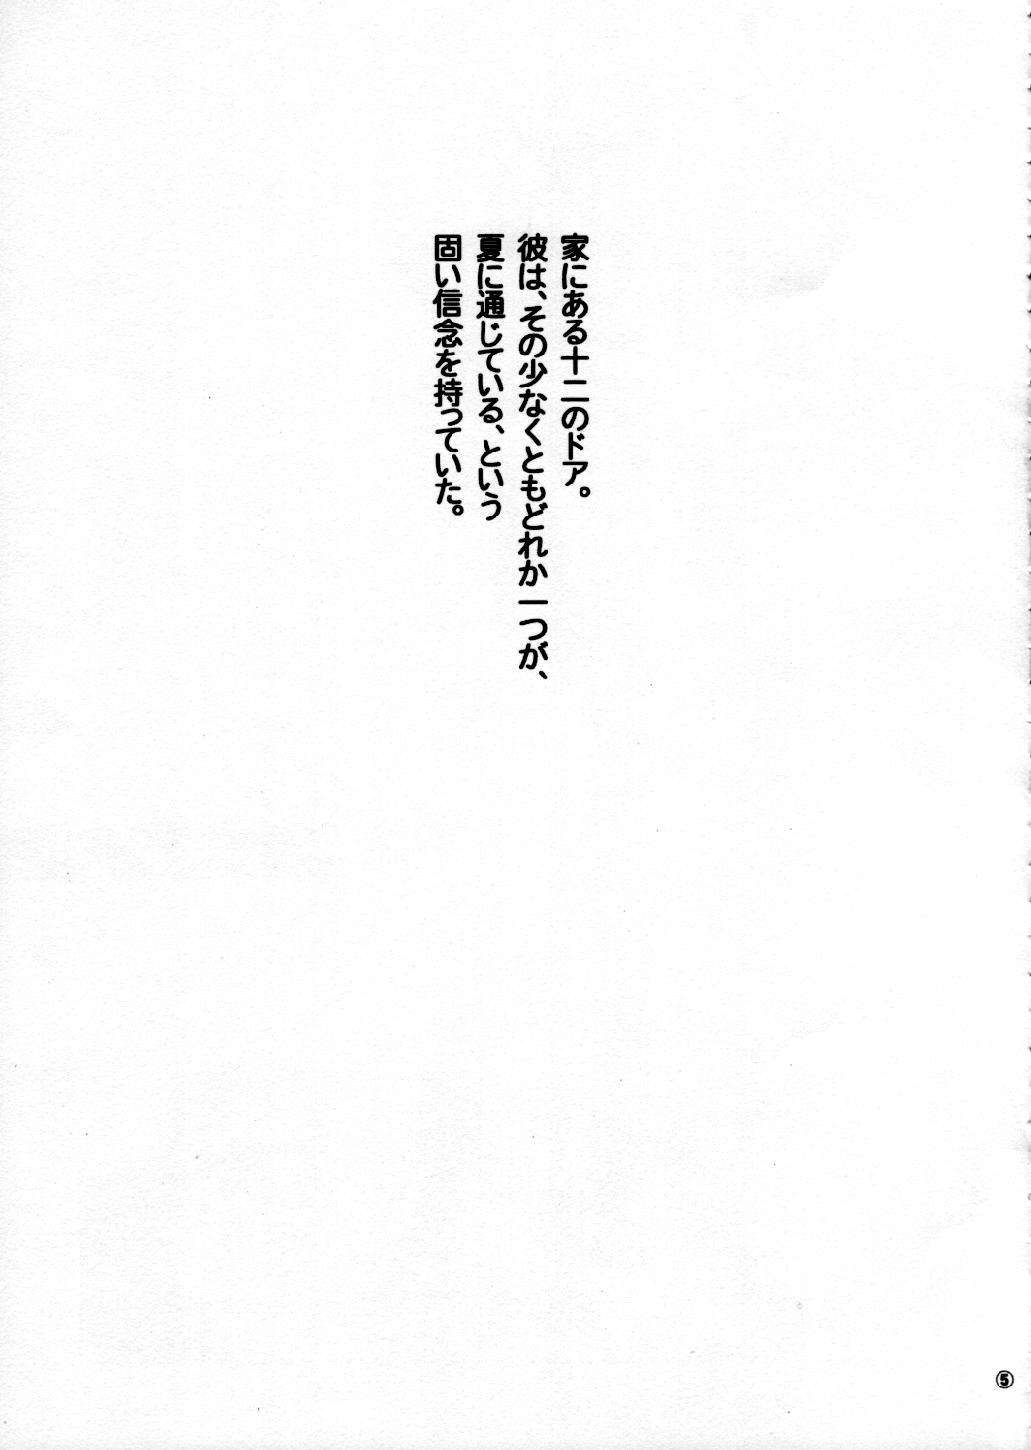 Massage Creep Kanaka no Sekai - THE WORLD OF KANAKA - Narue no sekai Rubdown - Page 4